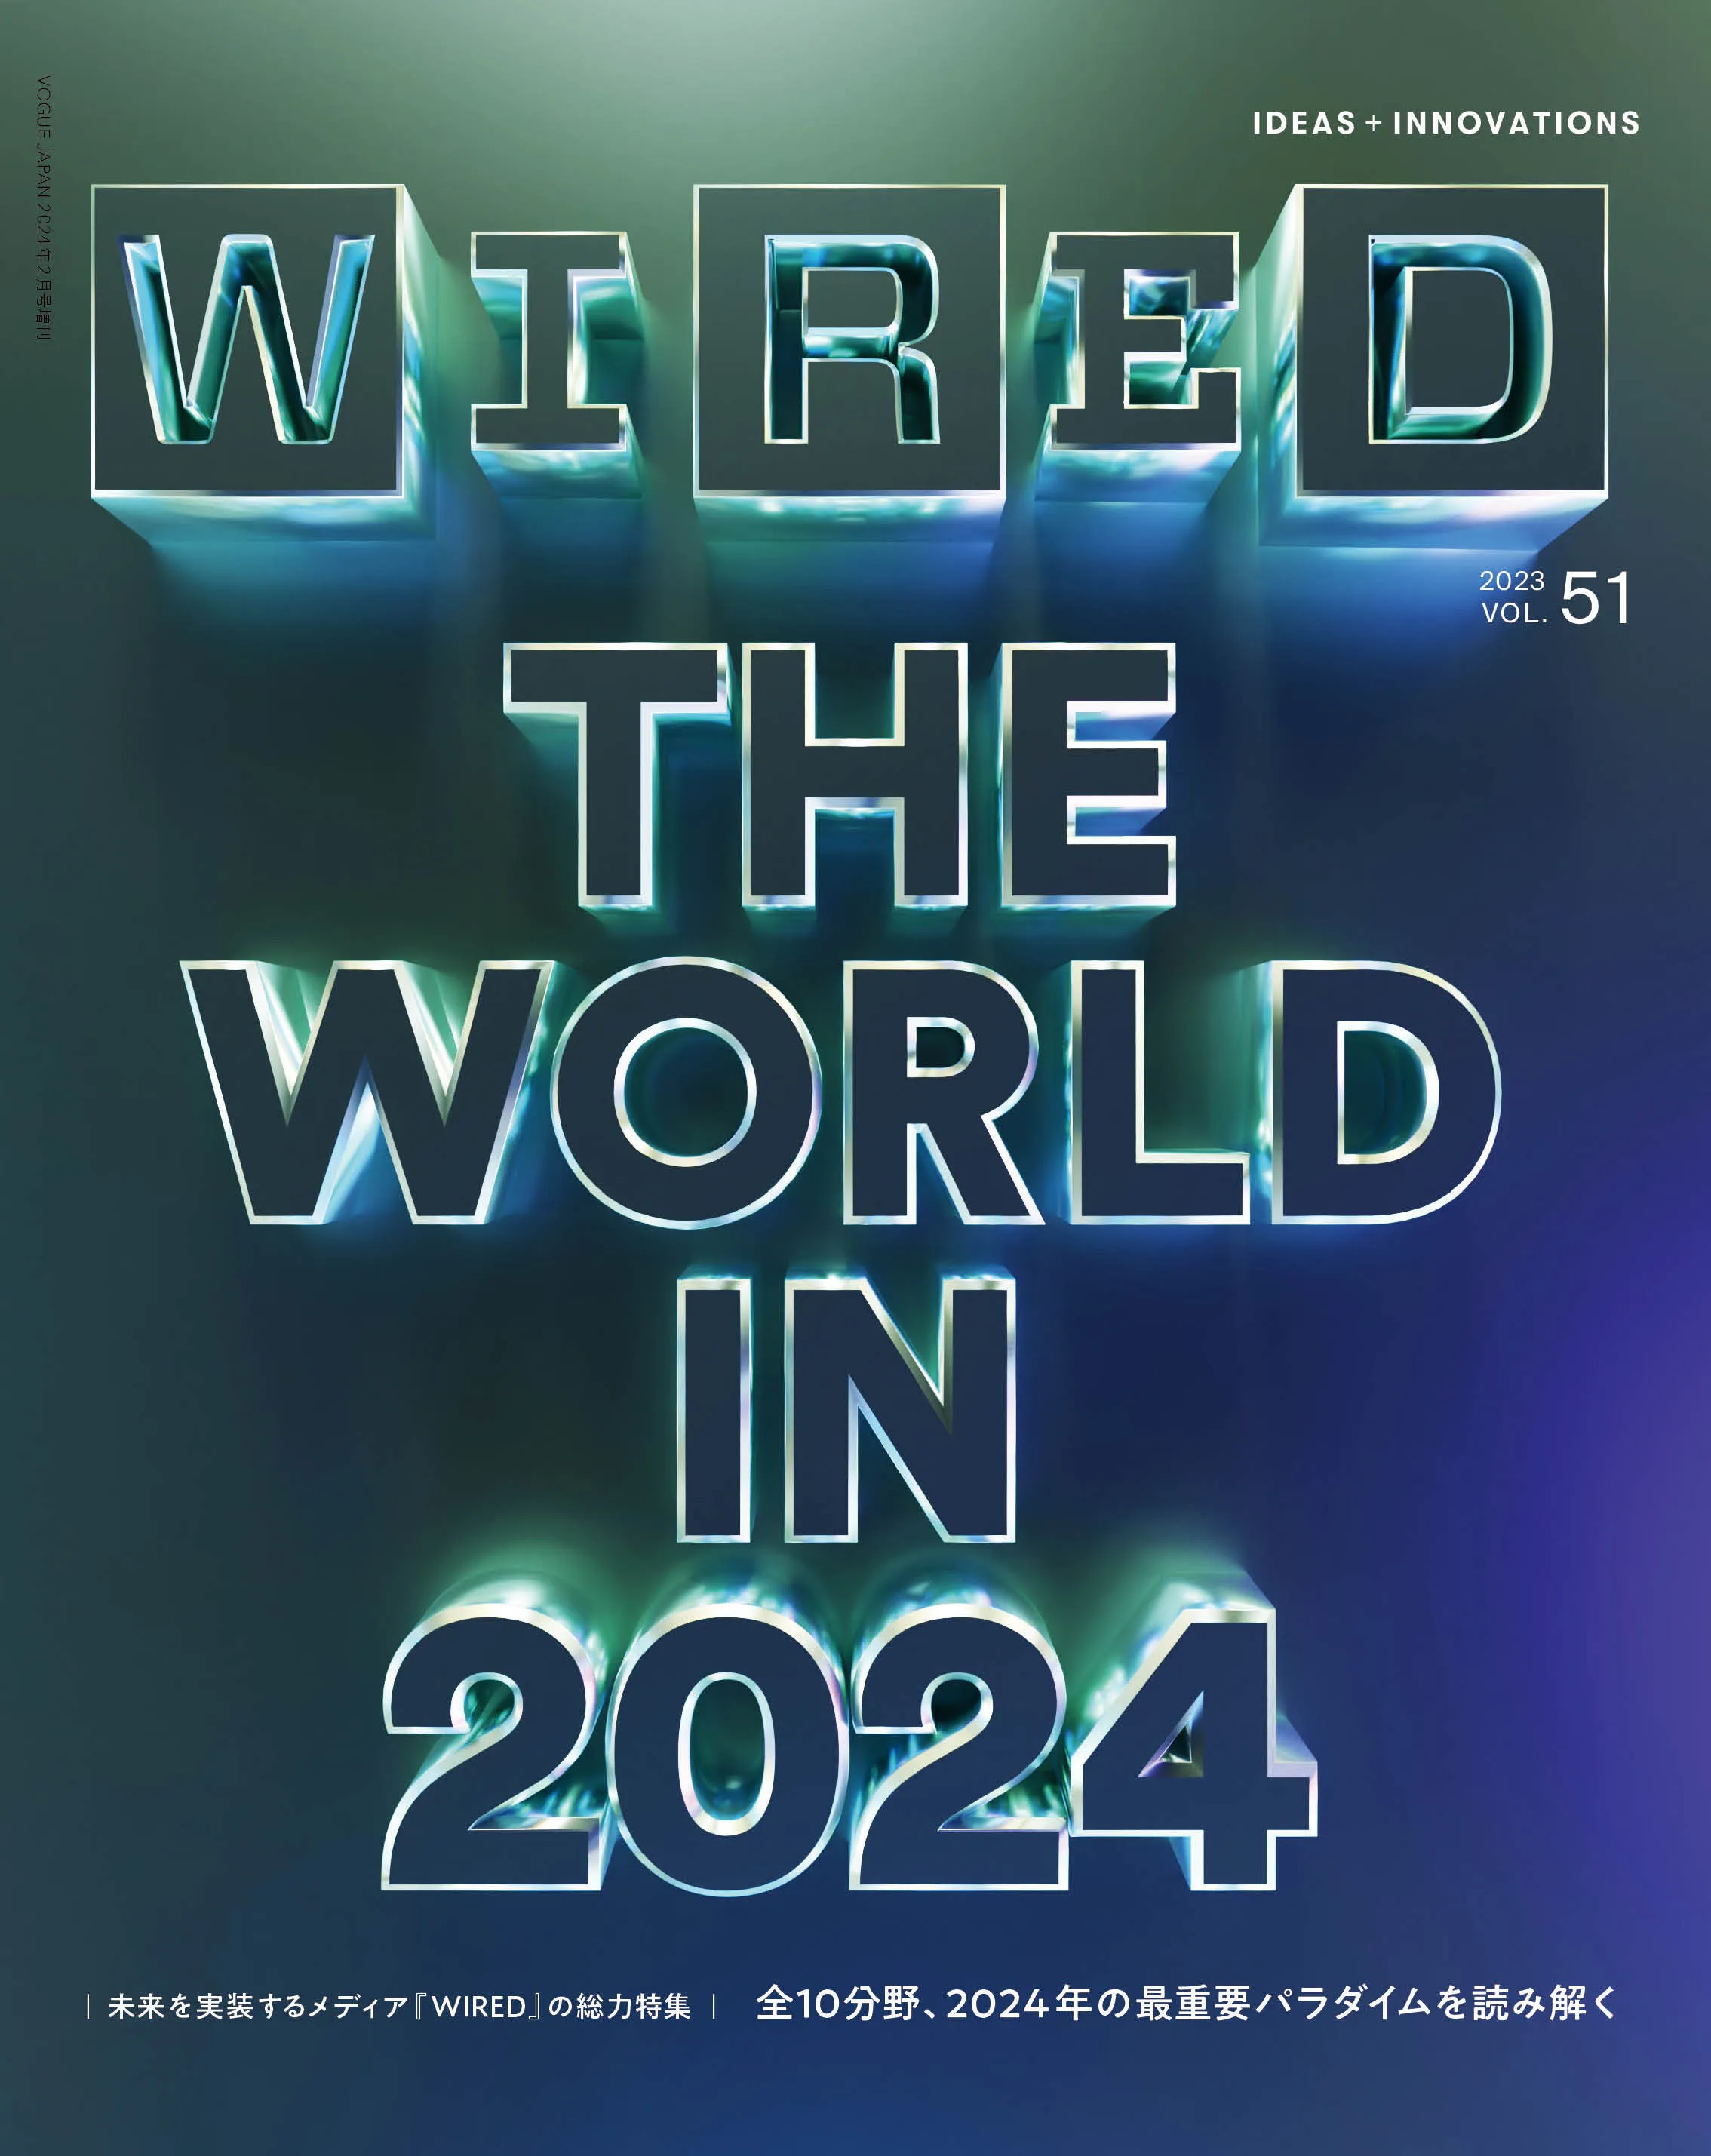 VOL.51 THE WORLD IN 2024 のカバーイメージ